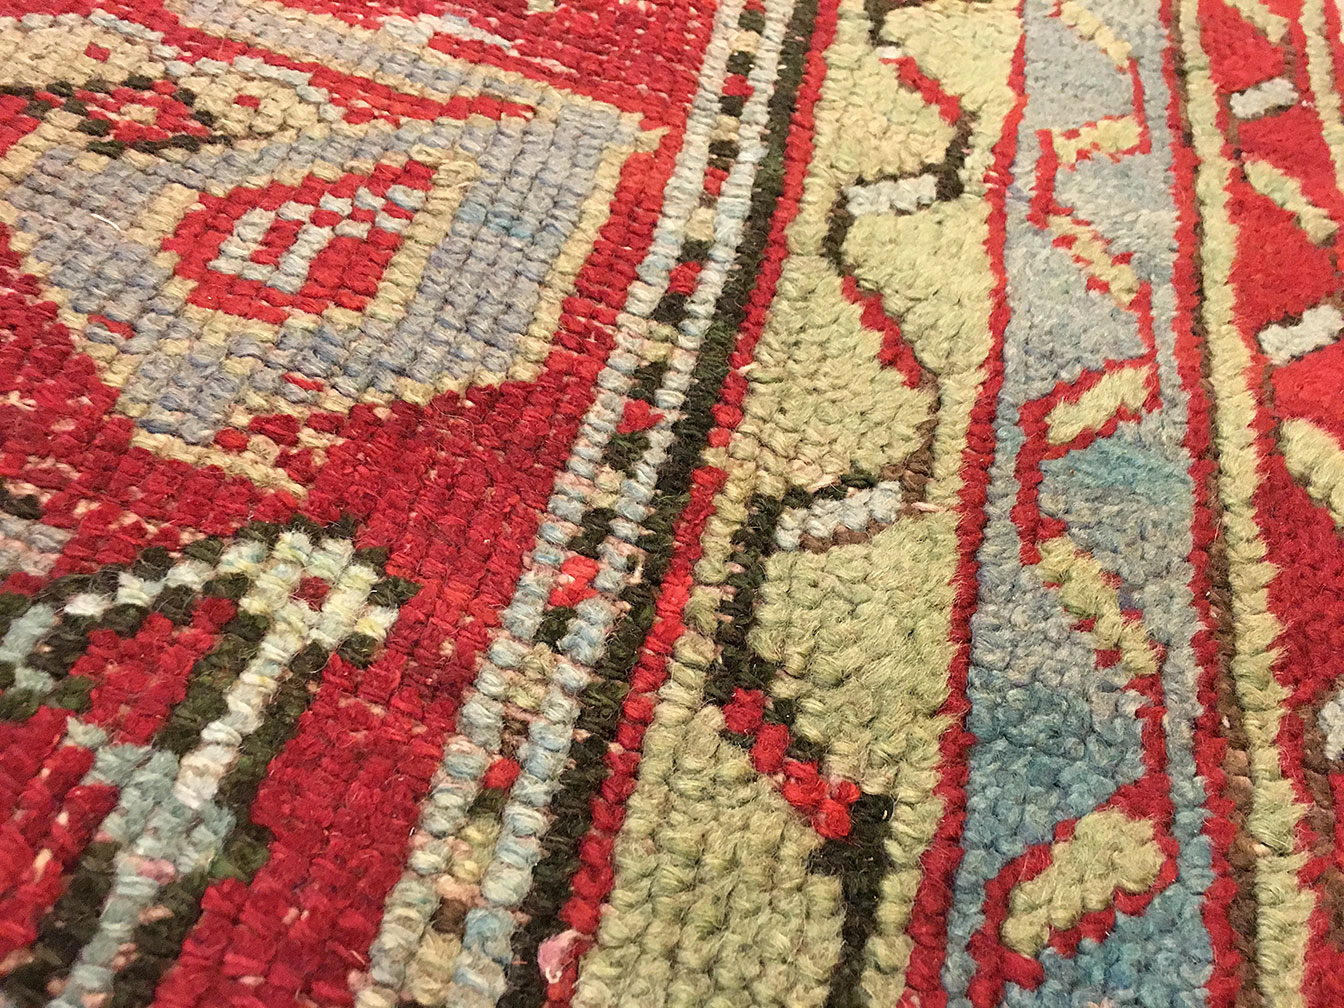 Antique oushak Carpet - # 51426